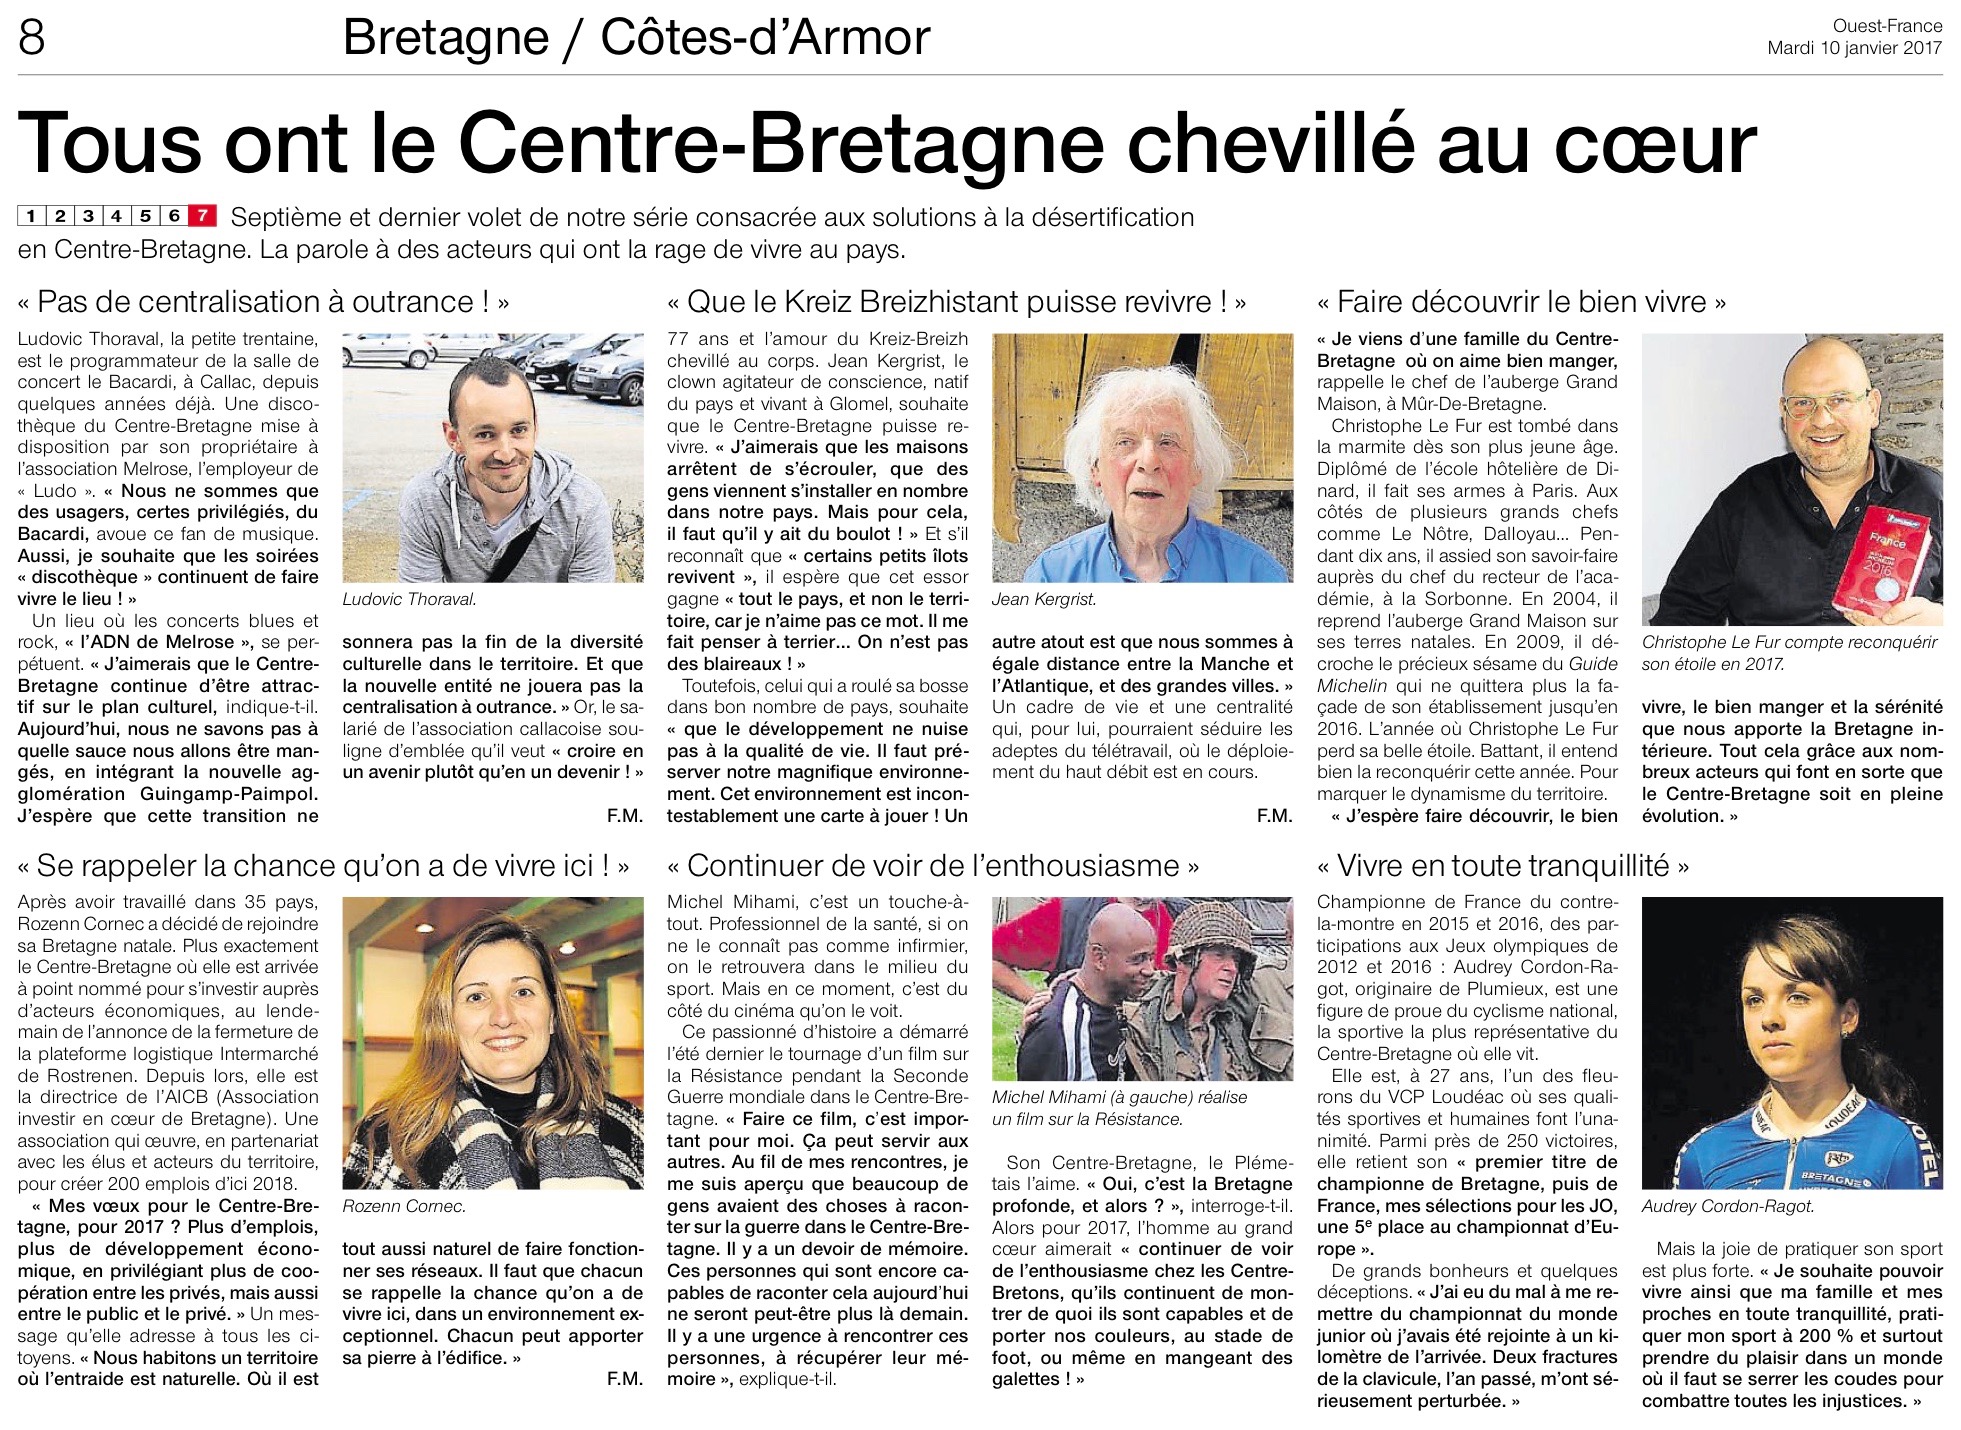 Communiqué de presse - Tous, ont le centre-bretagne chevillé au coeur - Ouest France